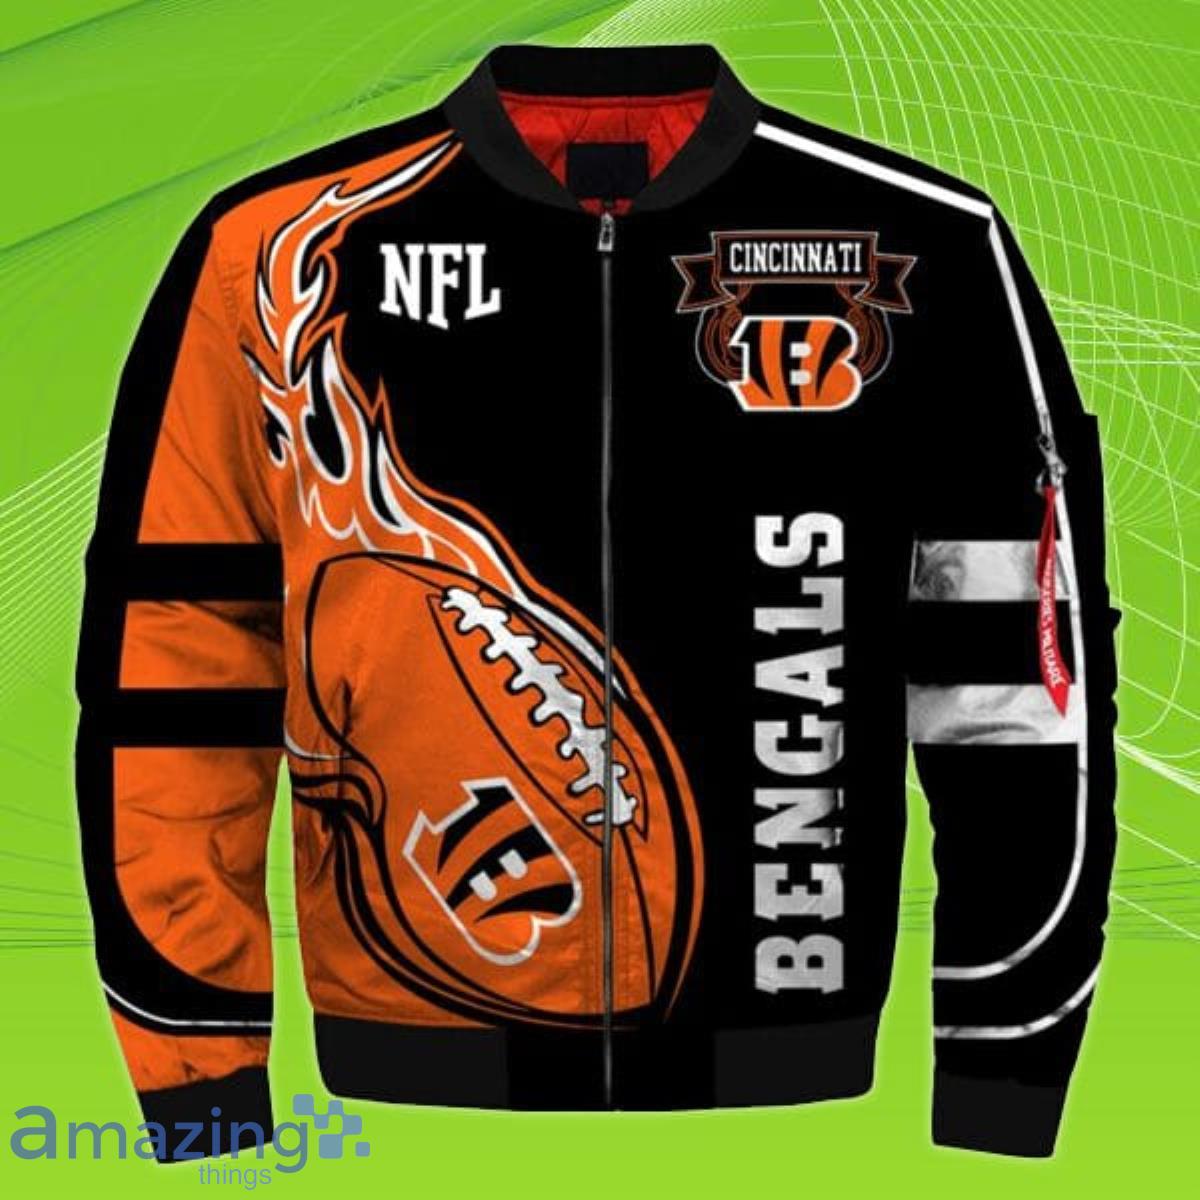 NFL Cincinnati Bengals Bomber Jacket Impressive Gift